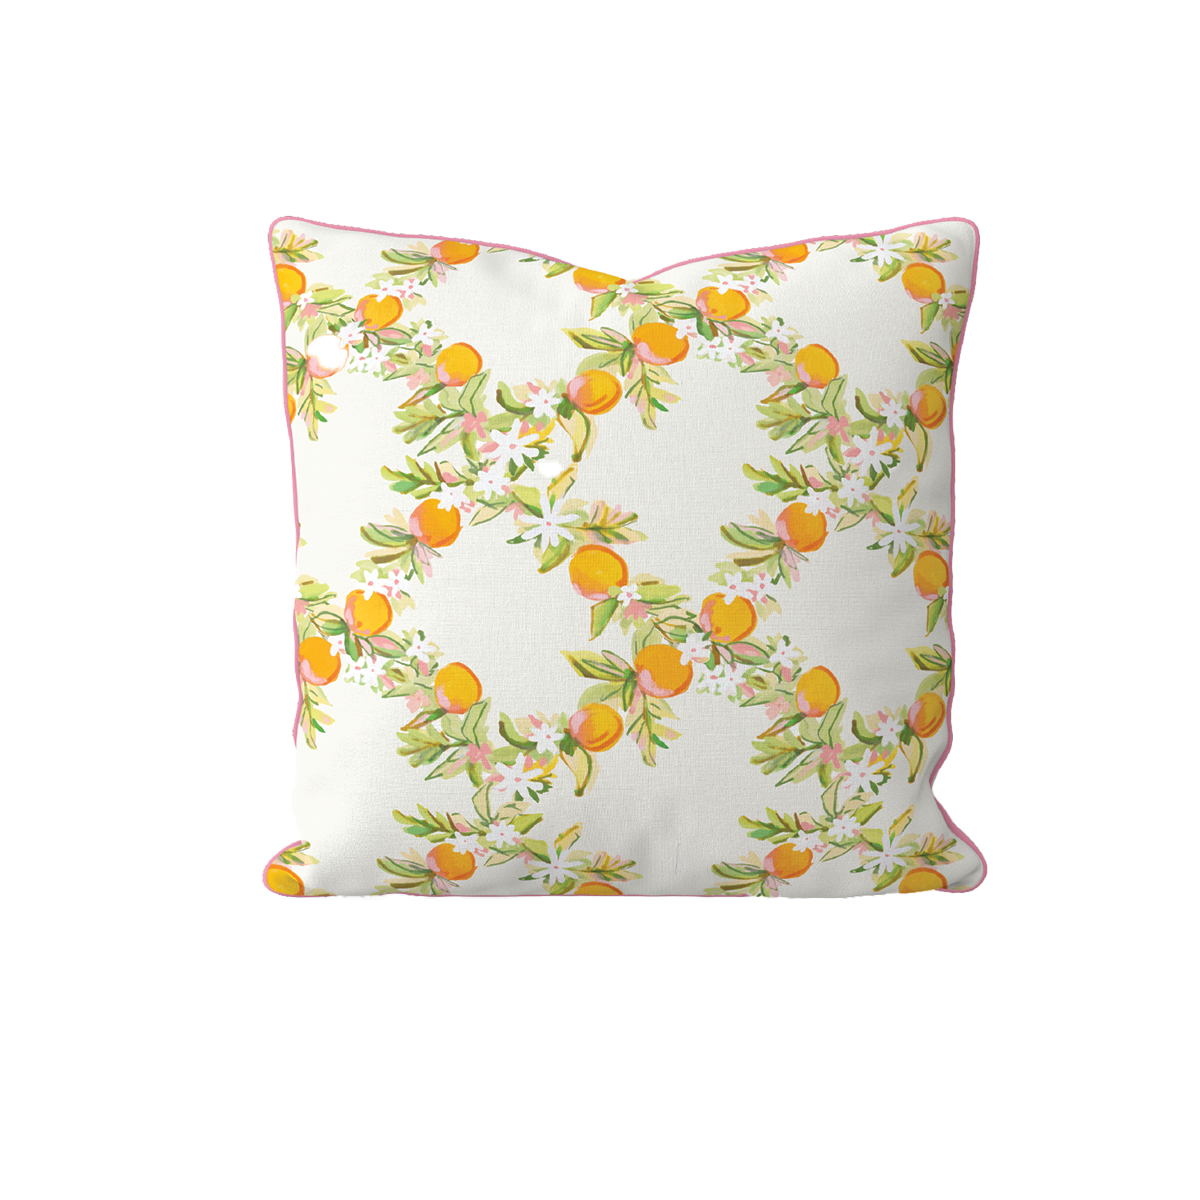 WHOLESALE: Citrus Lattice Pillow Covers Bulk